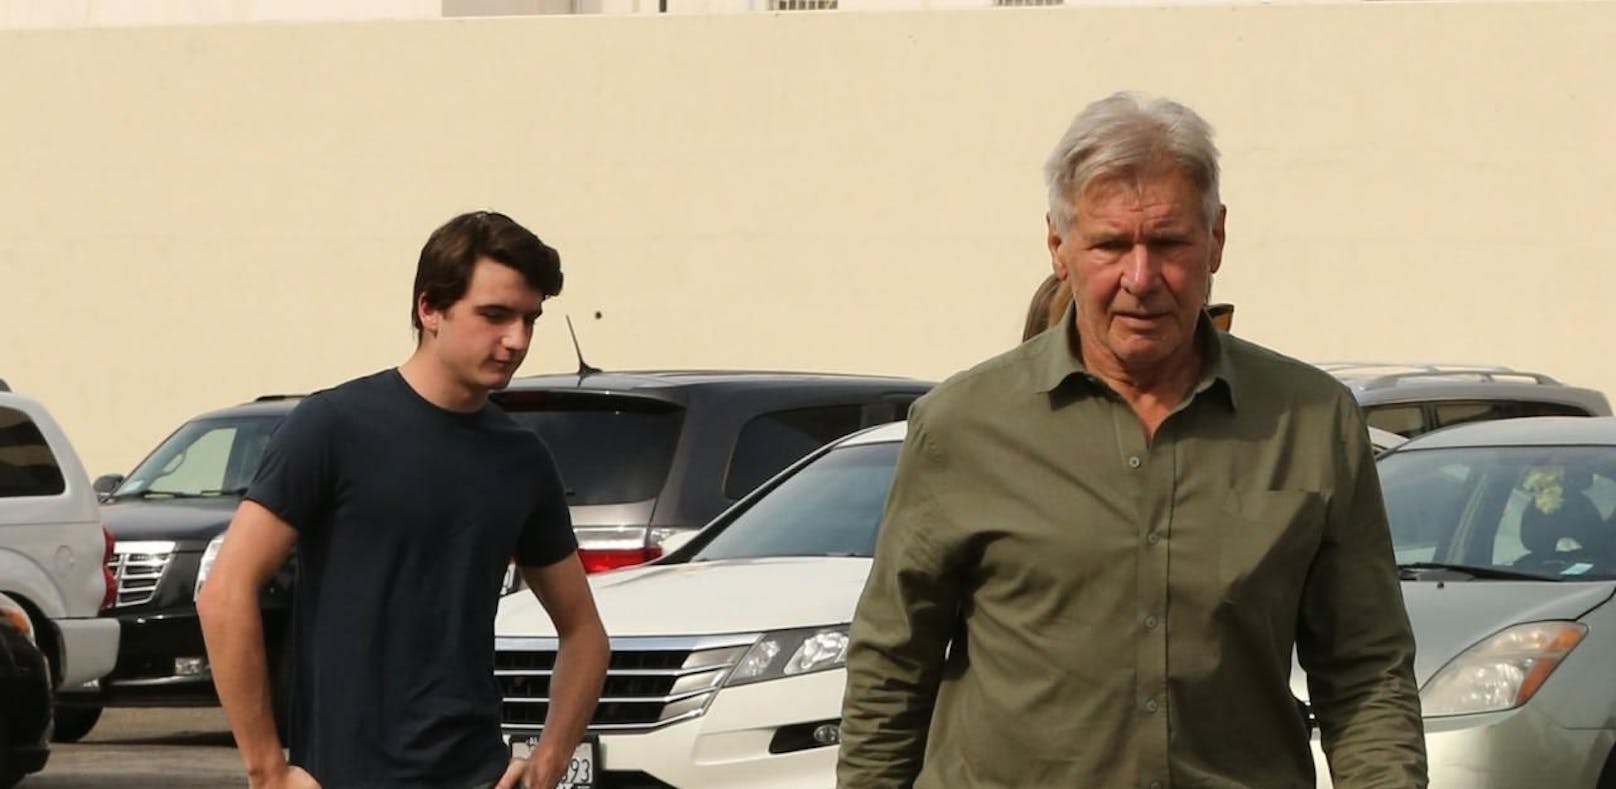 Harrison Ford rettet Frau nach Autounfall bei L.A.